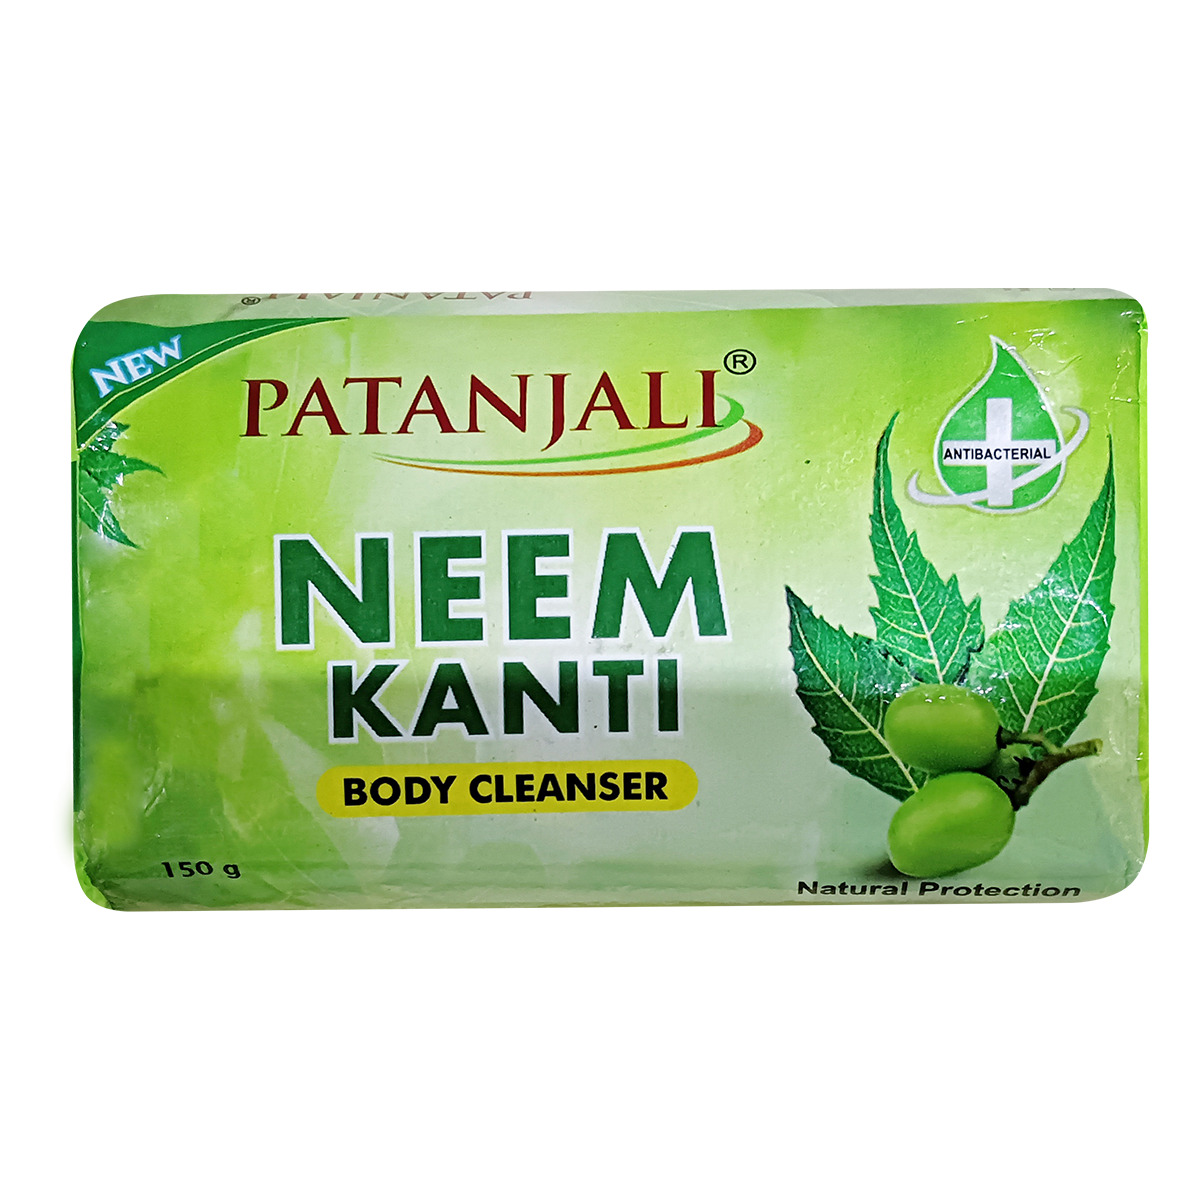 Patnjali Neem Kanti Body Cleanser Monthly Pack (150*3)